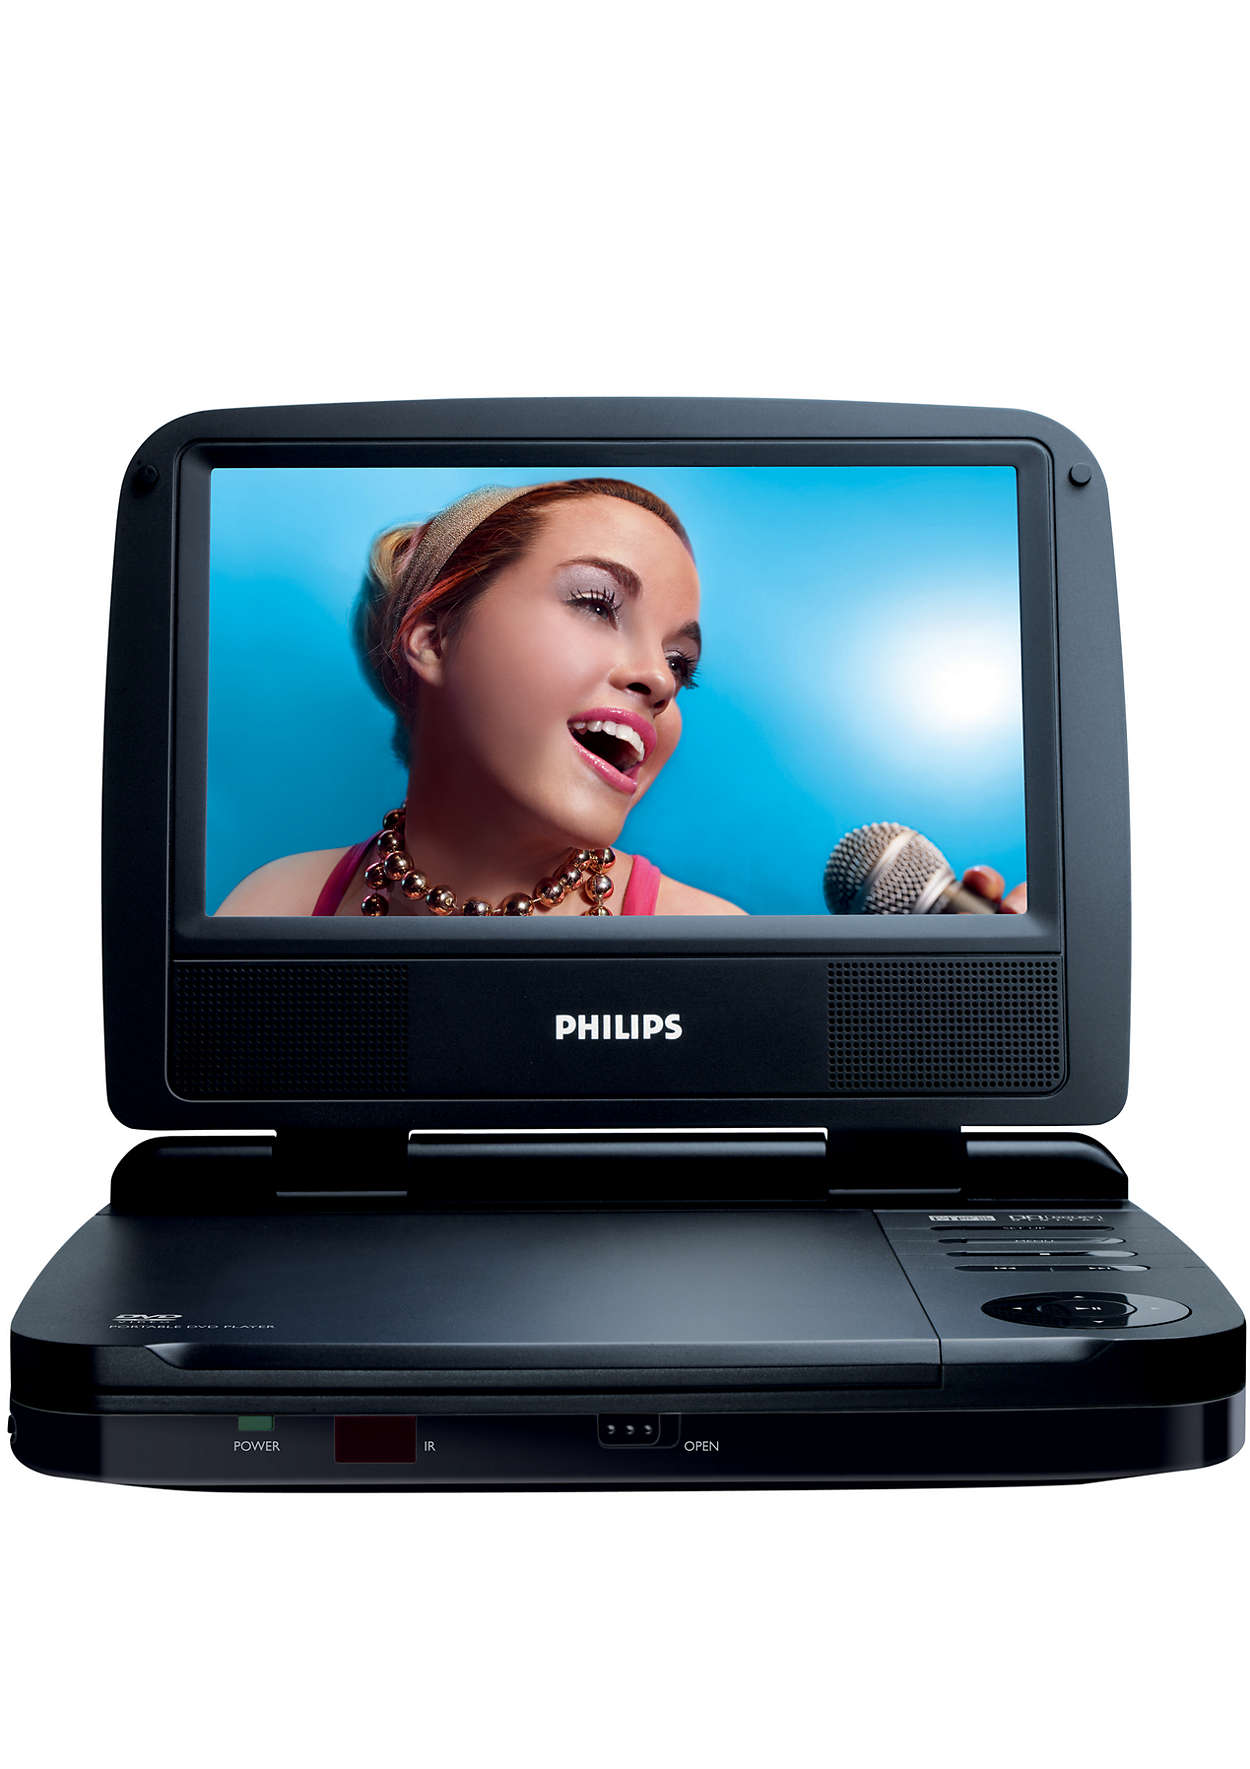 Филлипс видео. DVD-плеер Philips pet745. Двд плеер Филипс. Портативный двд плеер Филипс. DVD-плеер Philips pet702.